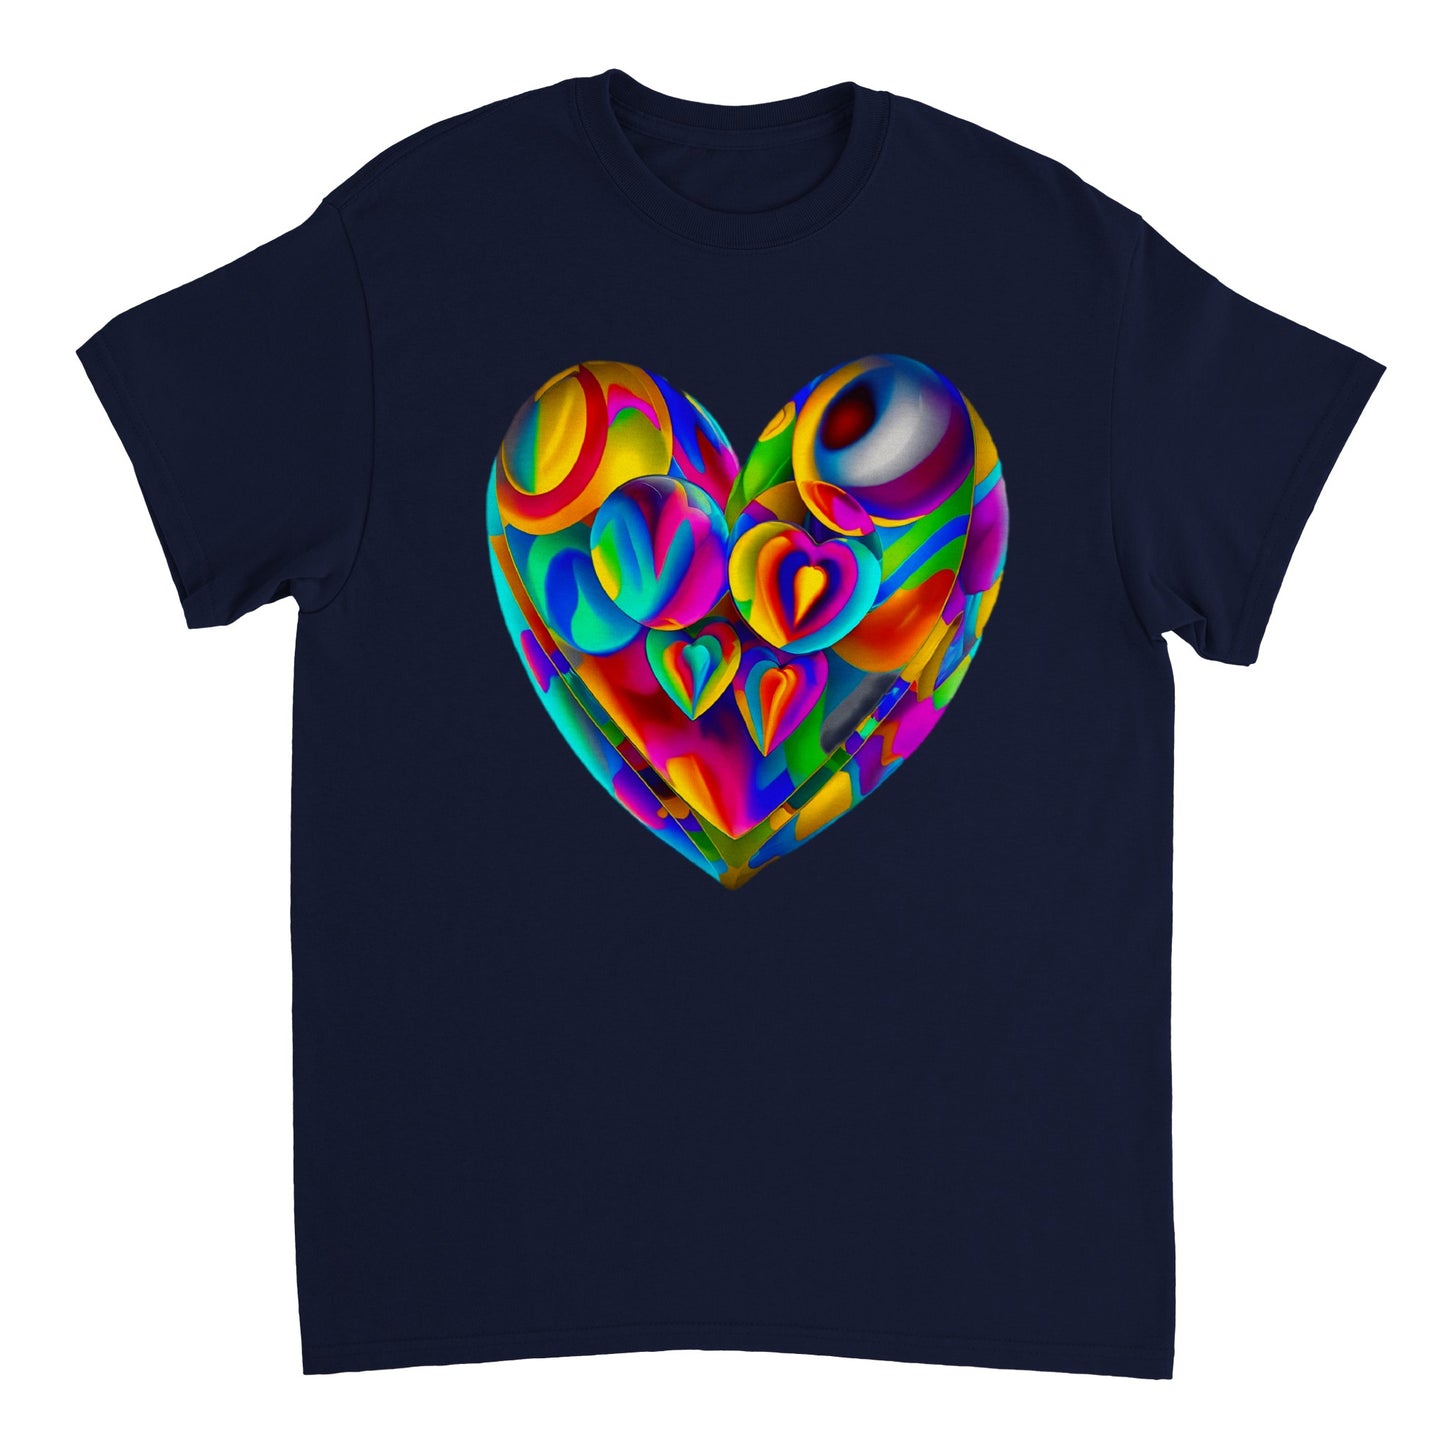 Love Heart - Heavyweight Unisex Crewneck T-shirt 98